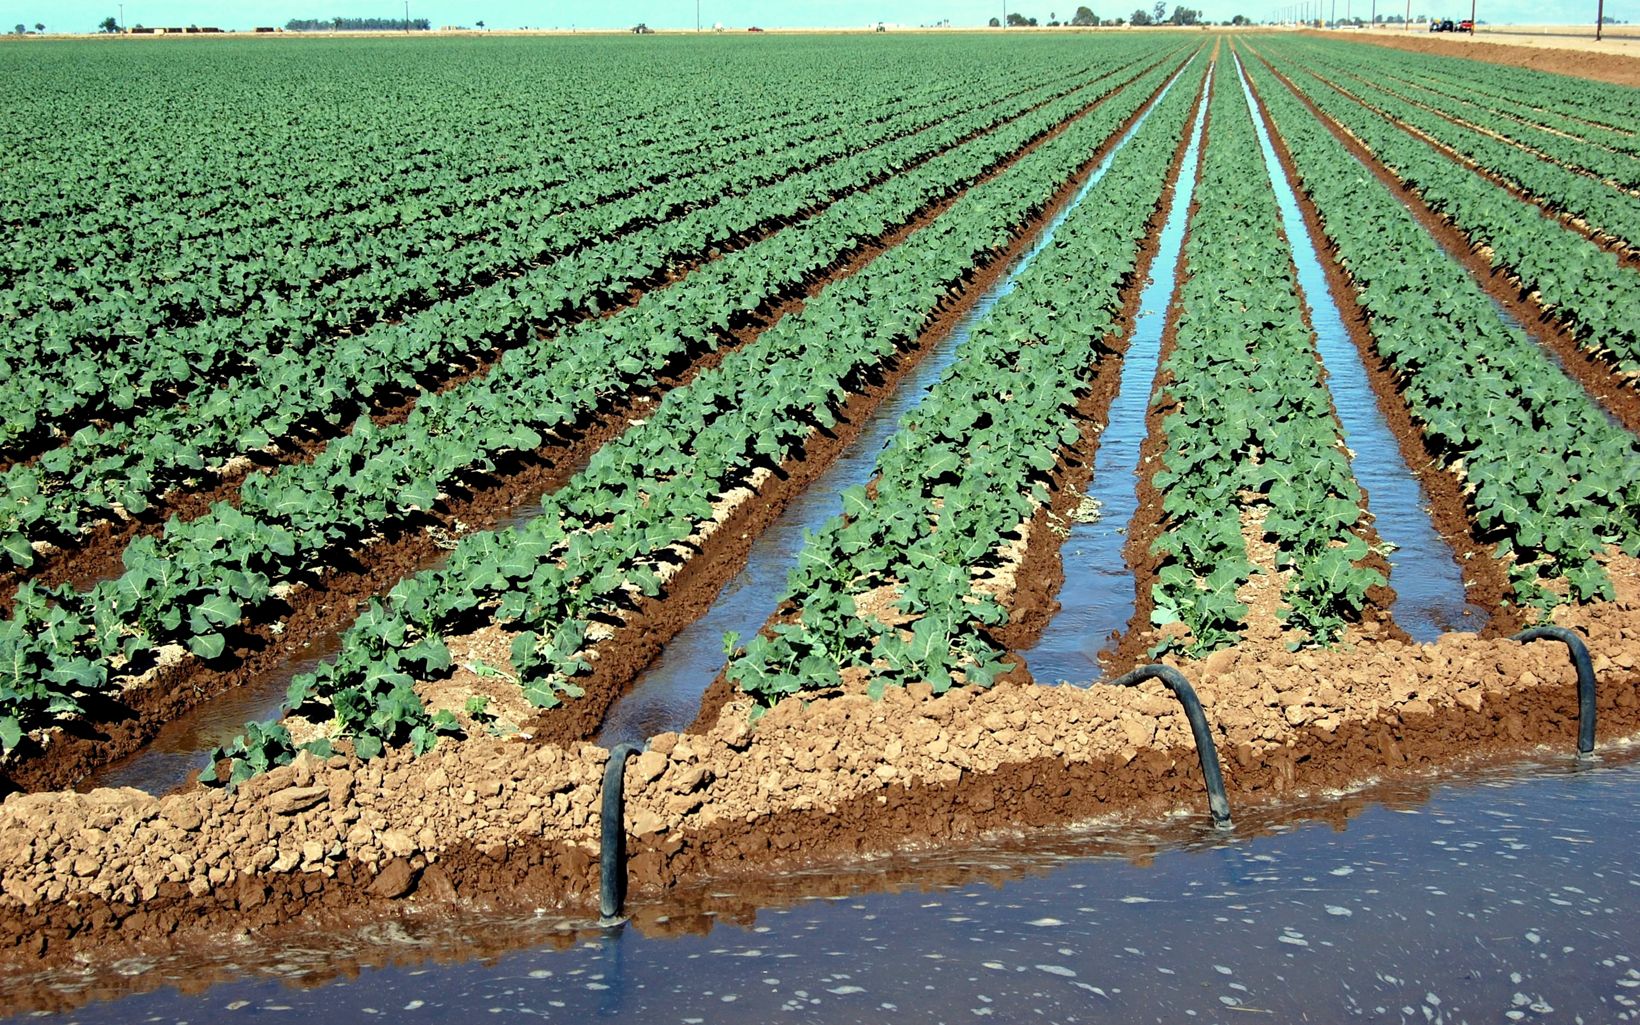 Irrigation on a farm near San Diego